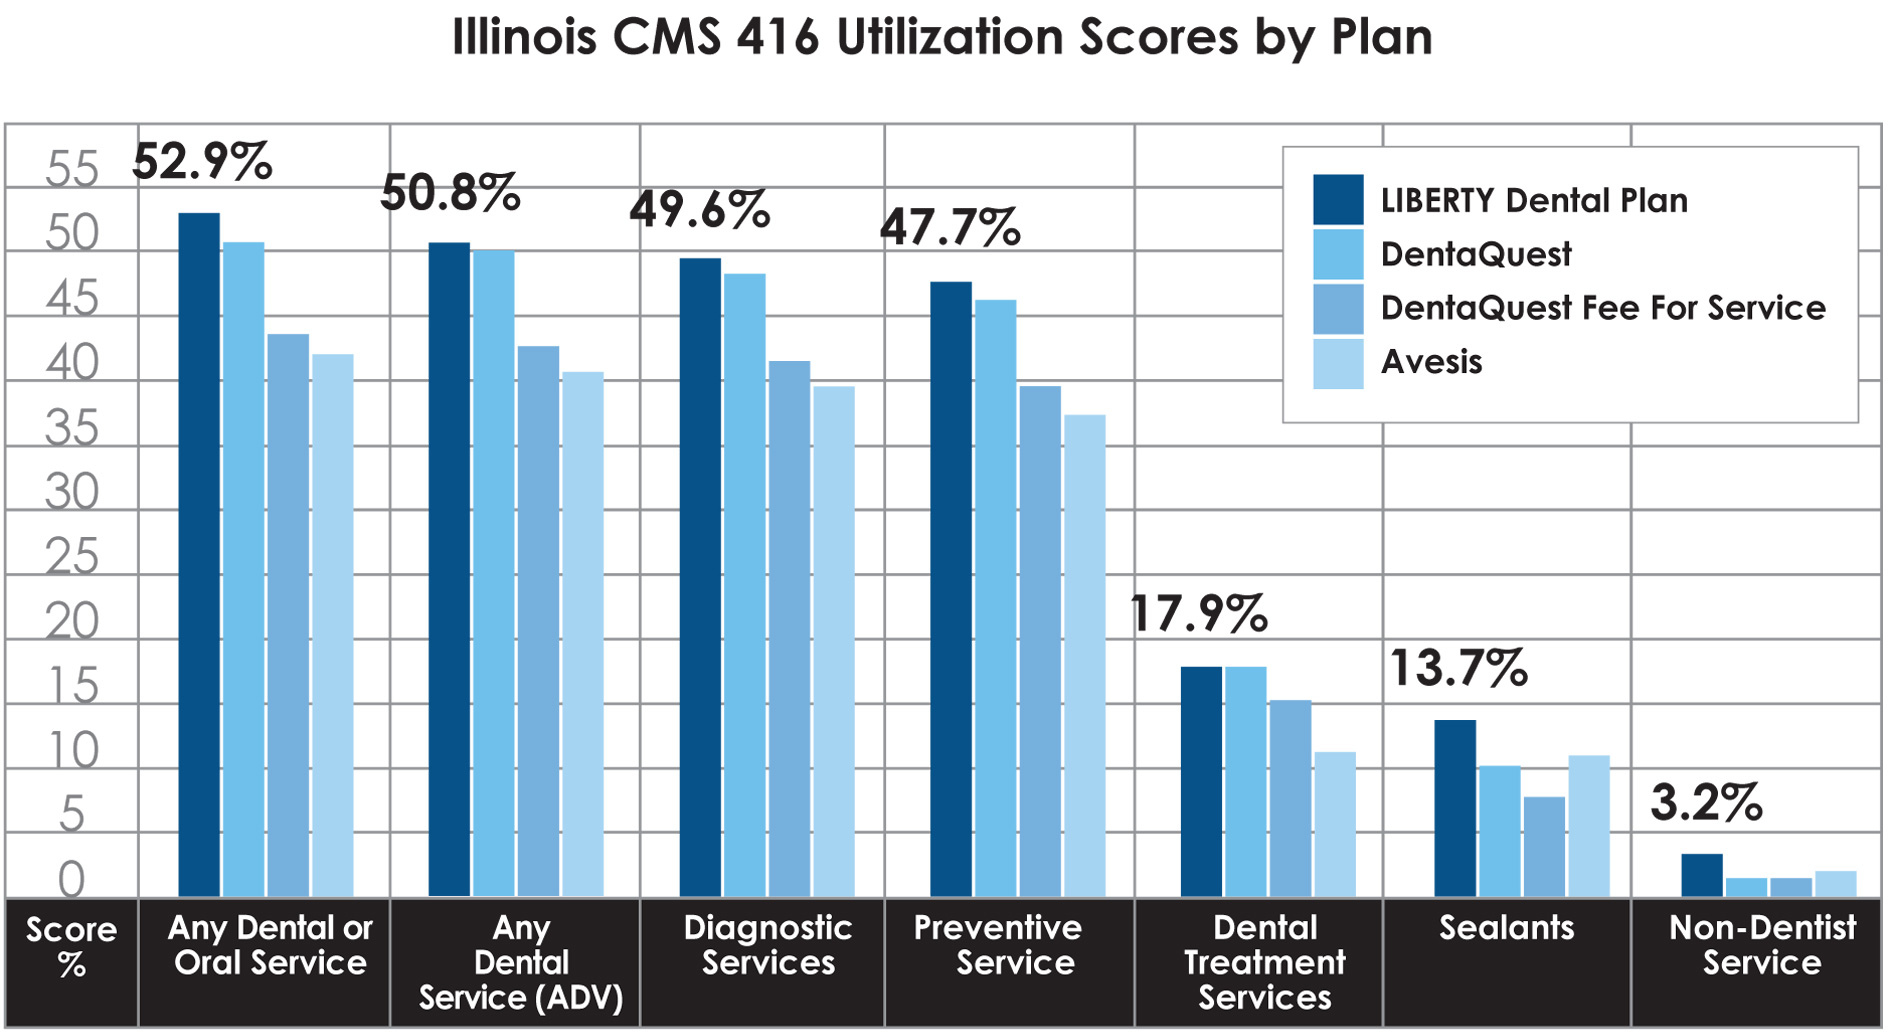 IL CMS 416 utilization scores by plan graph